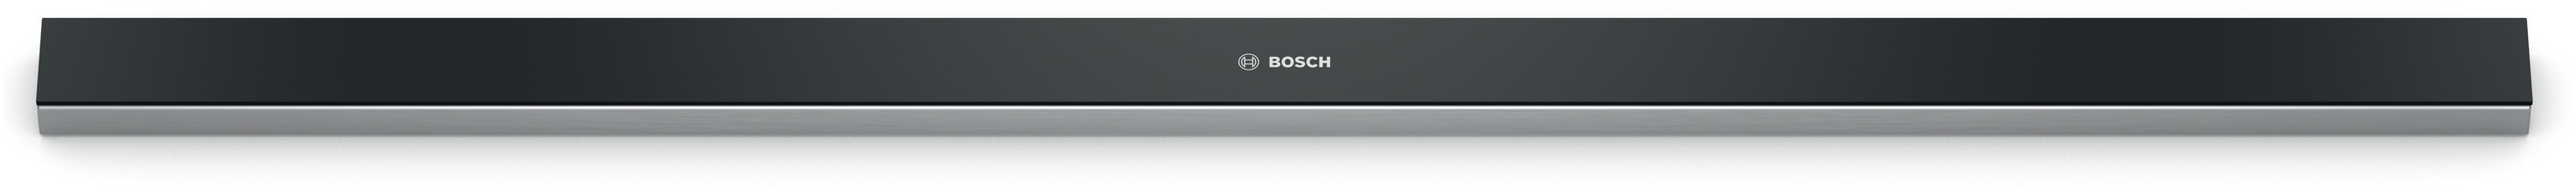 Bosch  DSZ4986